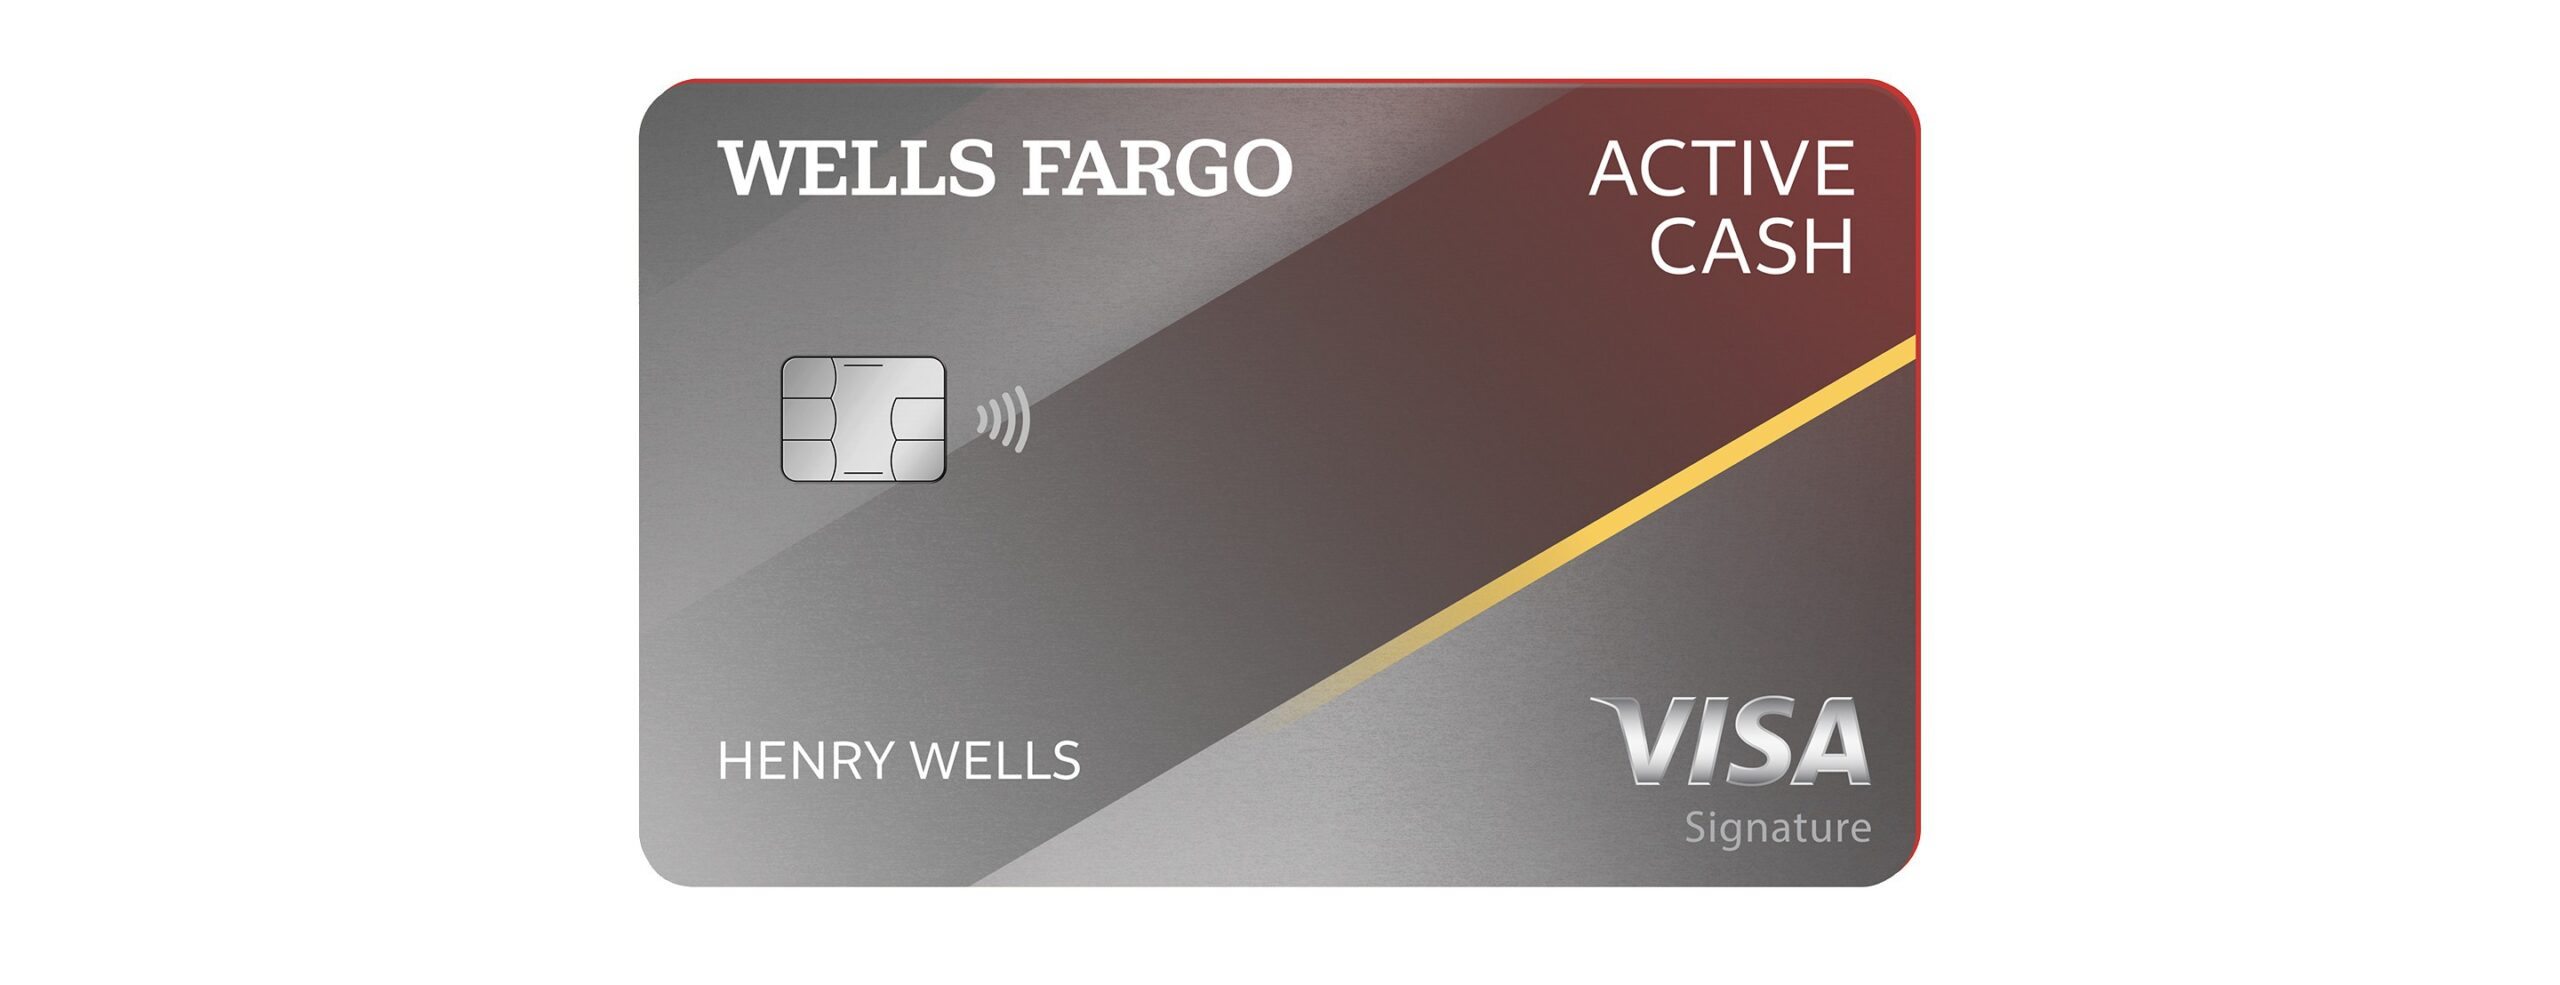 Conheça o cartão Wells Fargo Active Cash - Veja os Principais benefícios,exclusividades e privilégios